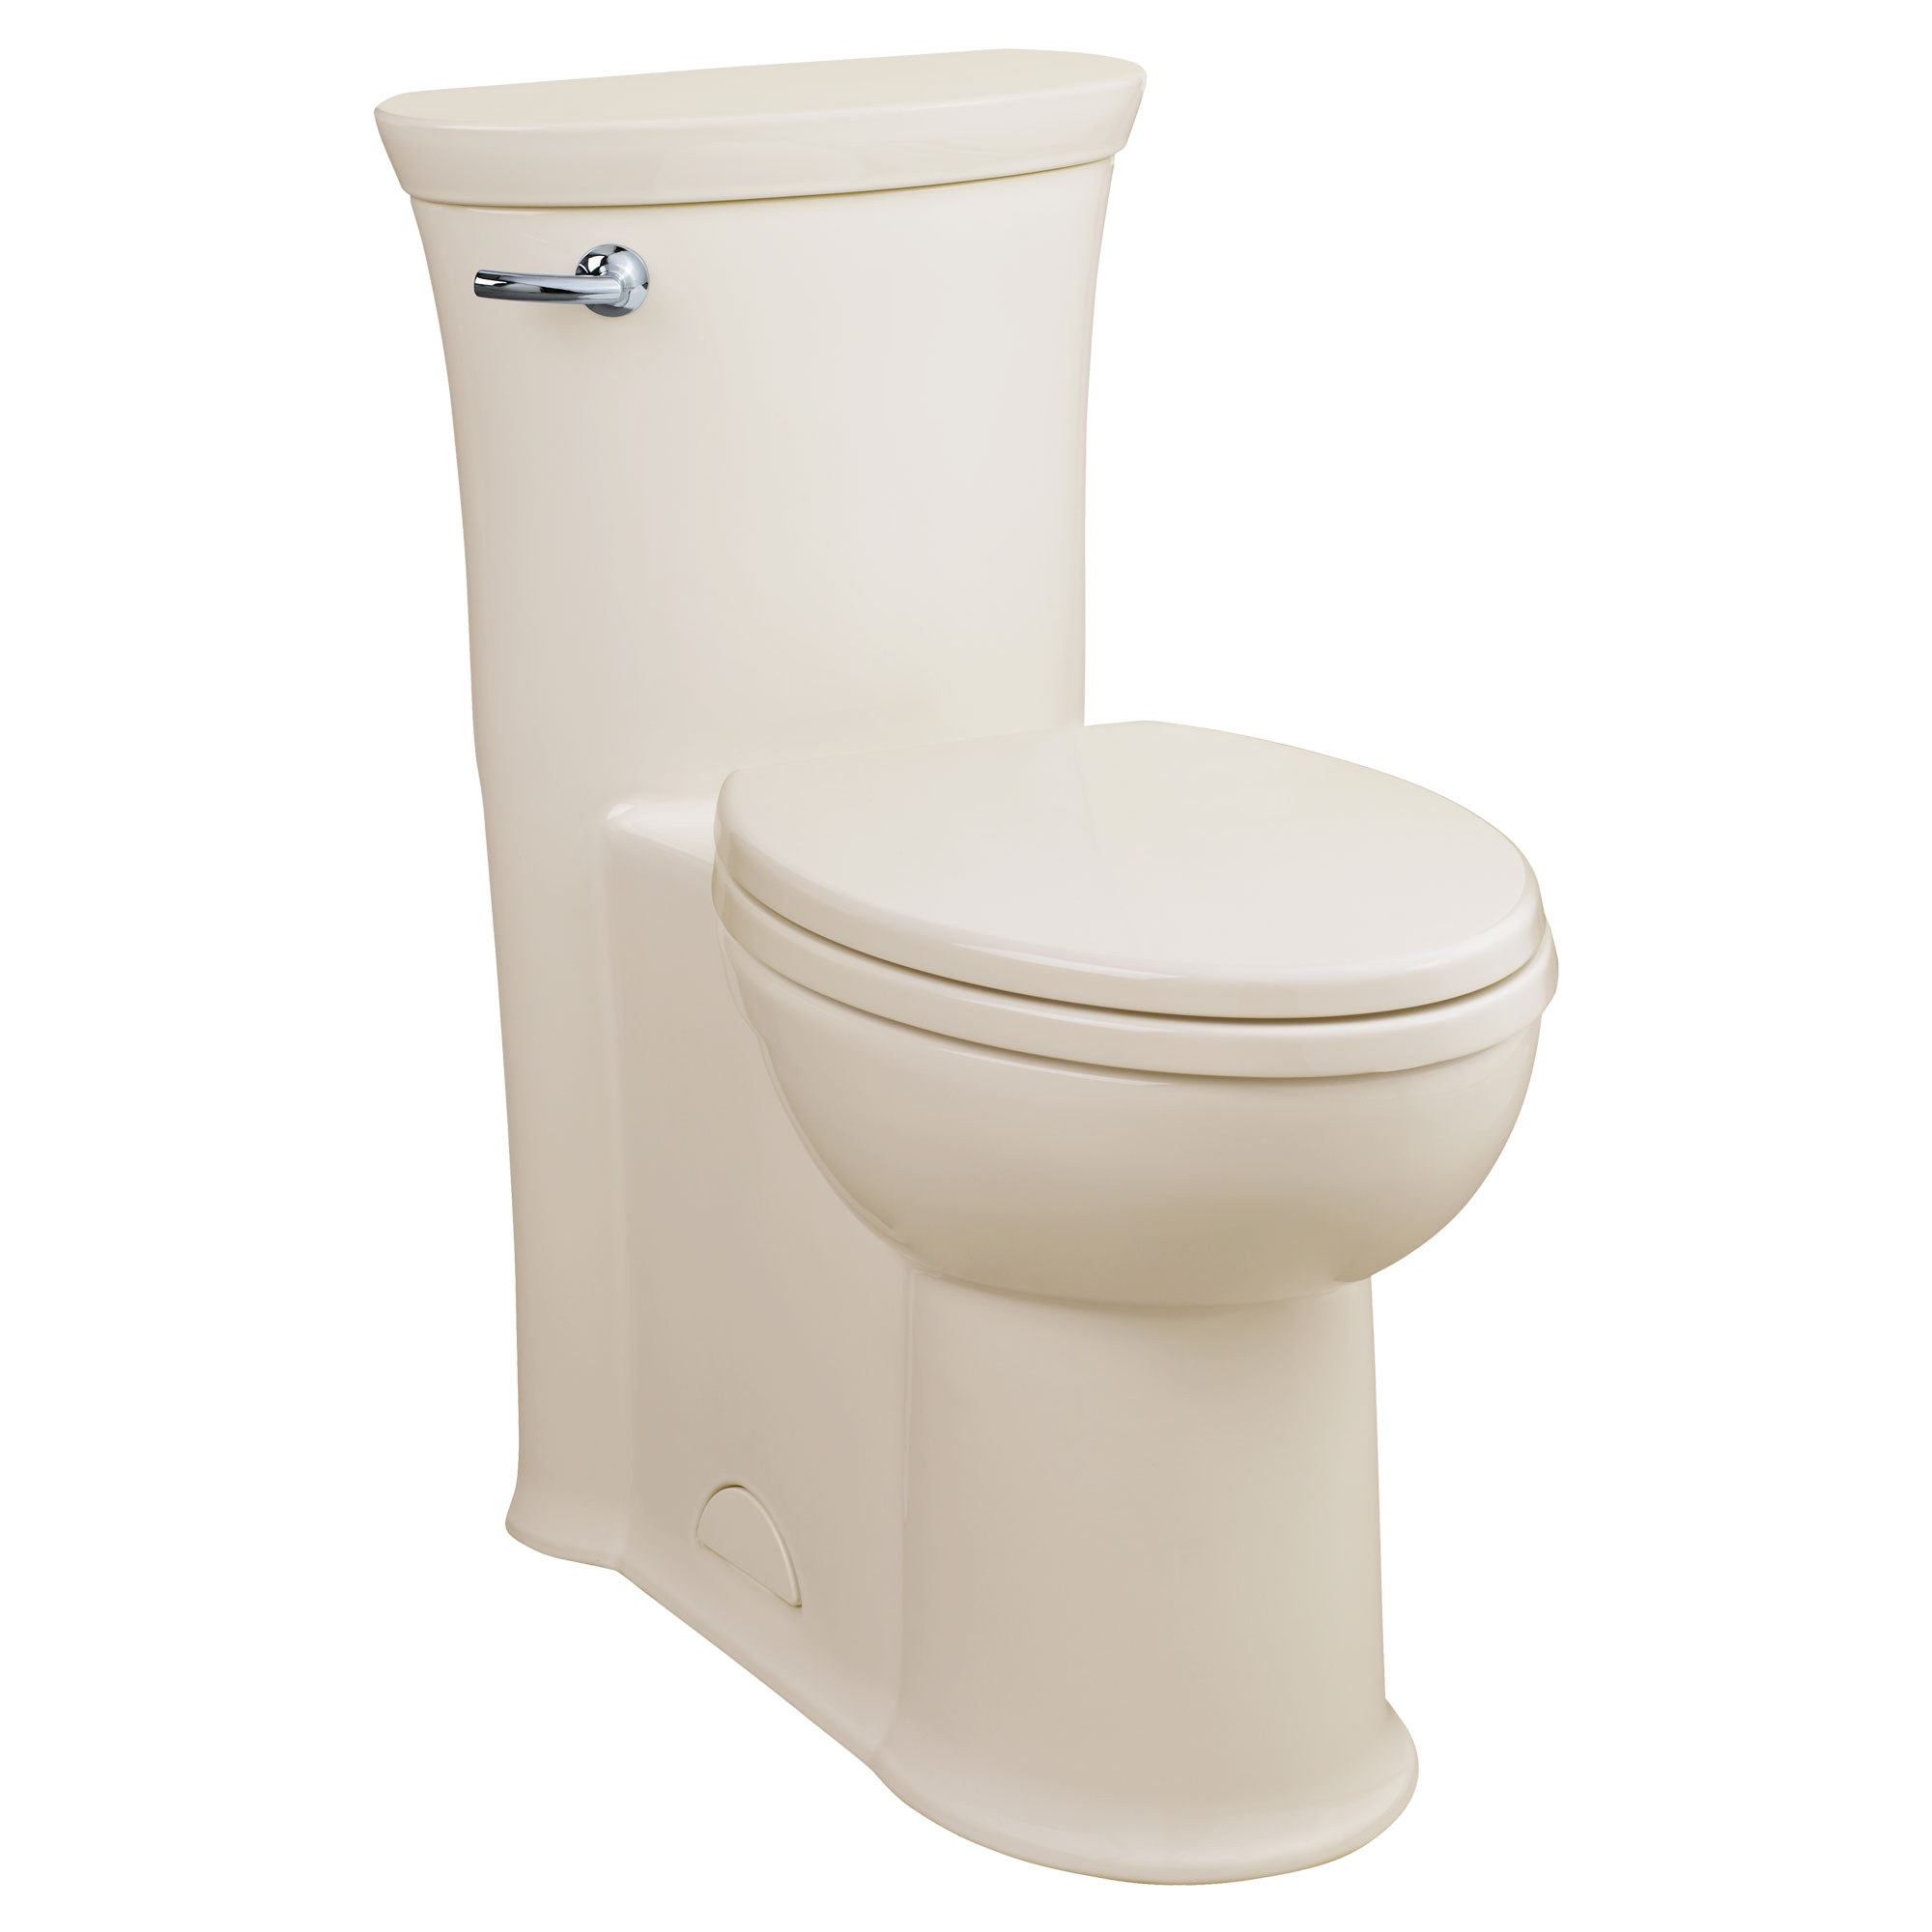 Toilette monopièce Tropic, 1,28 gpc/4,8 lpc, à cuvette allongée à hauteur de chaise avec siège